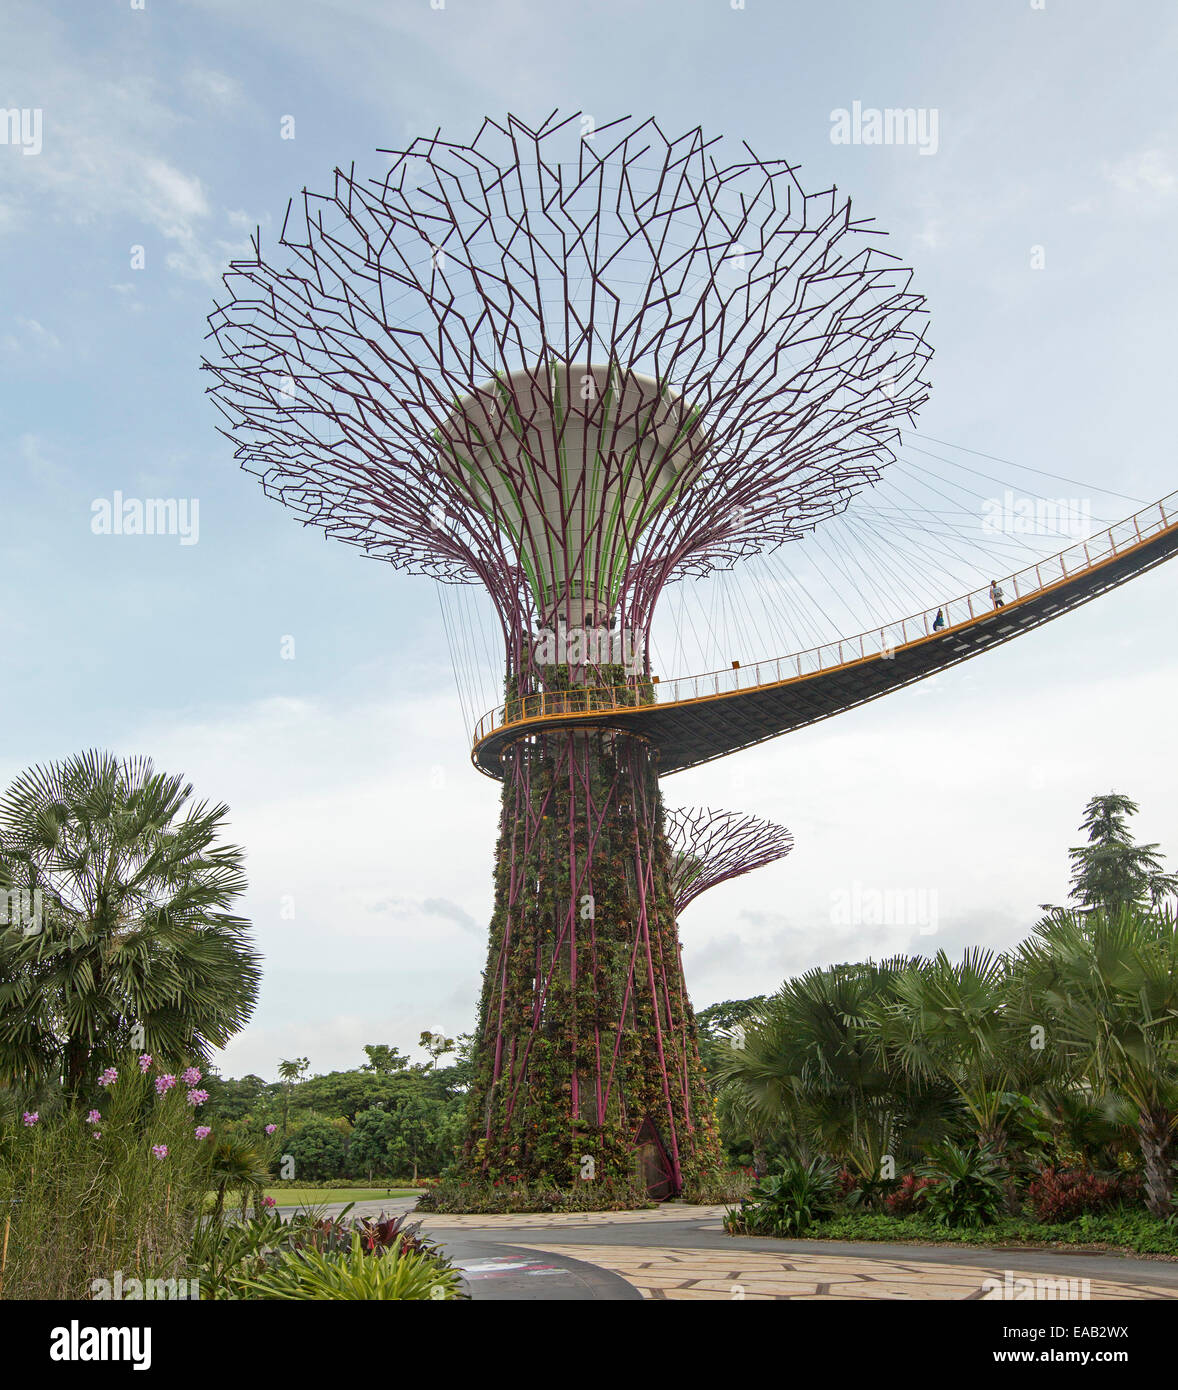 Voir d'immense "upertree', un jardin vertical, & high Skyway plate-forme au-dessus de la végétation dense de Gardens By The Bay Singapour Banque D'Images